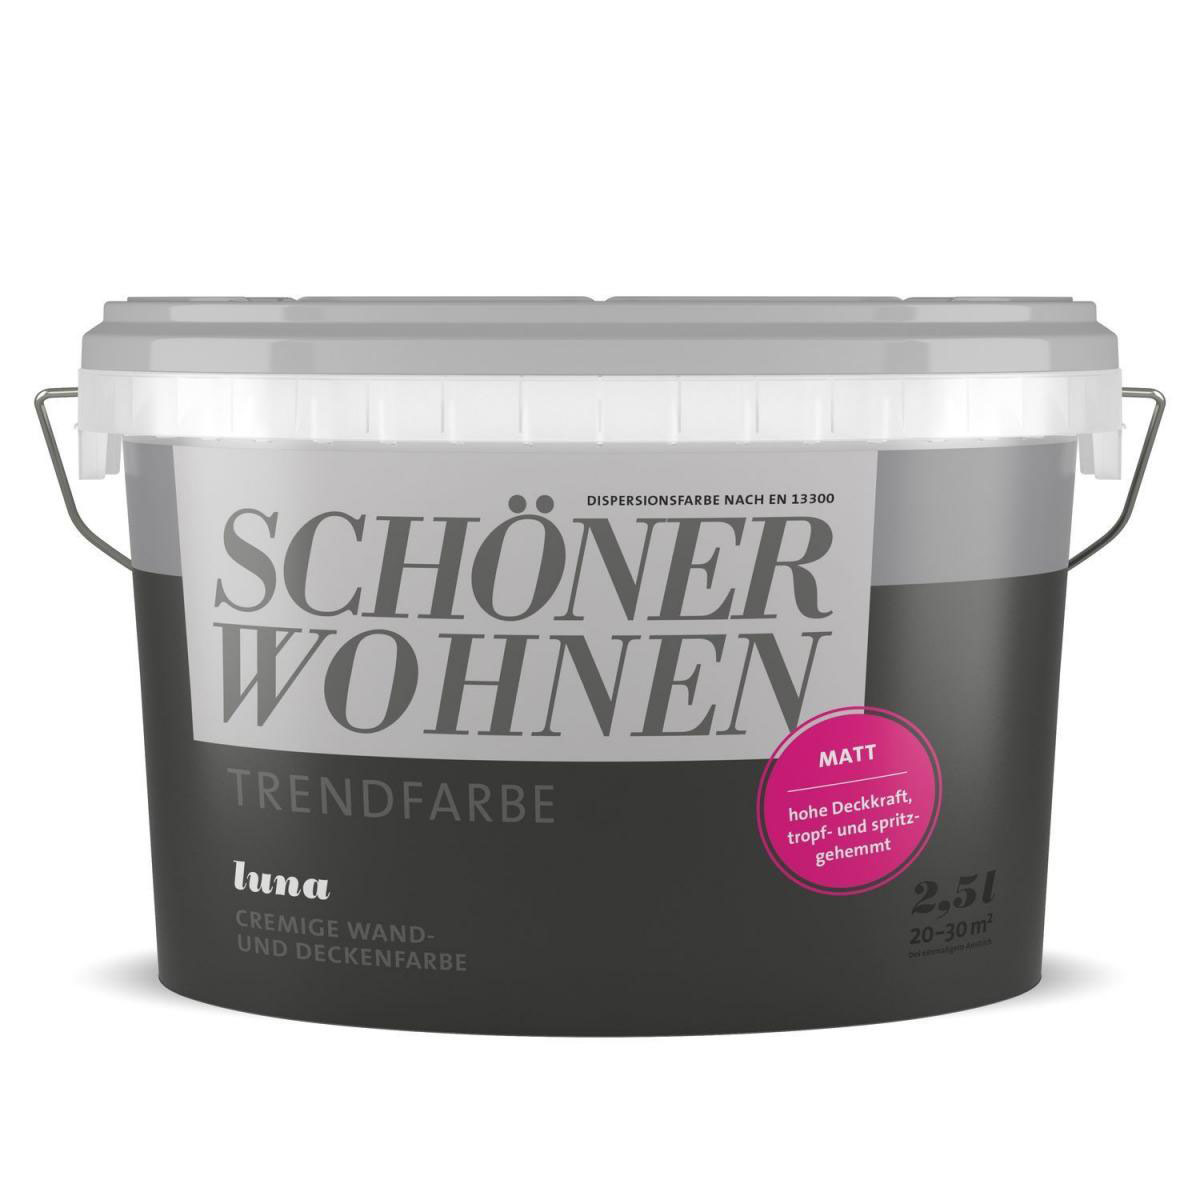 Schöner | 918735 Wohnen Strukturbürste Farbe